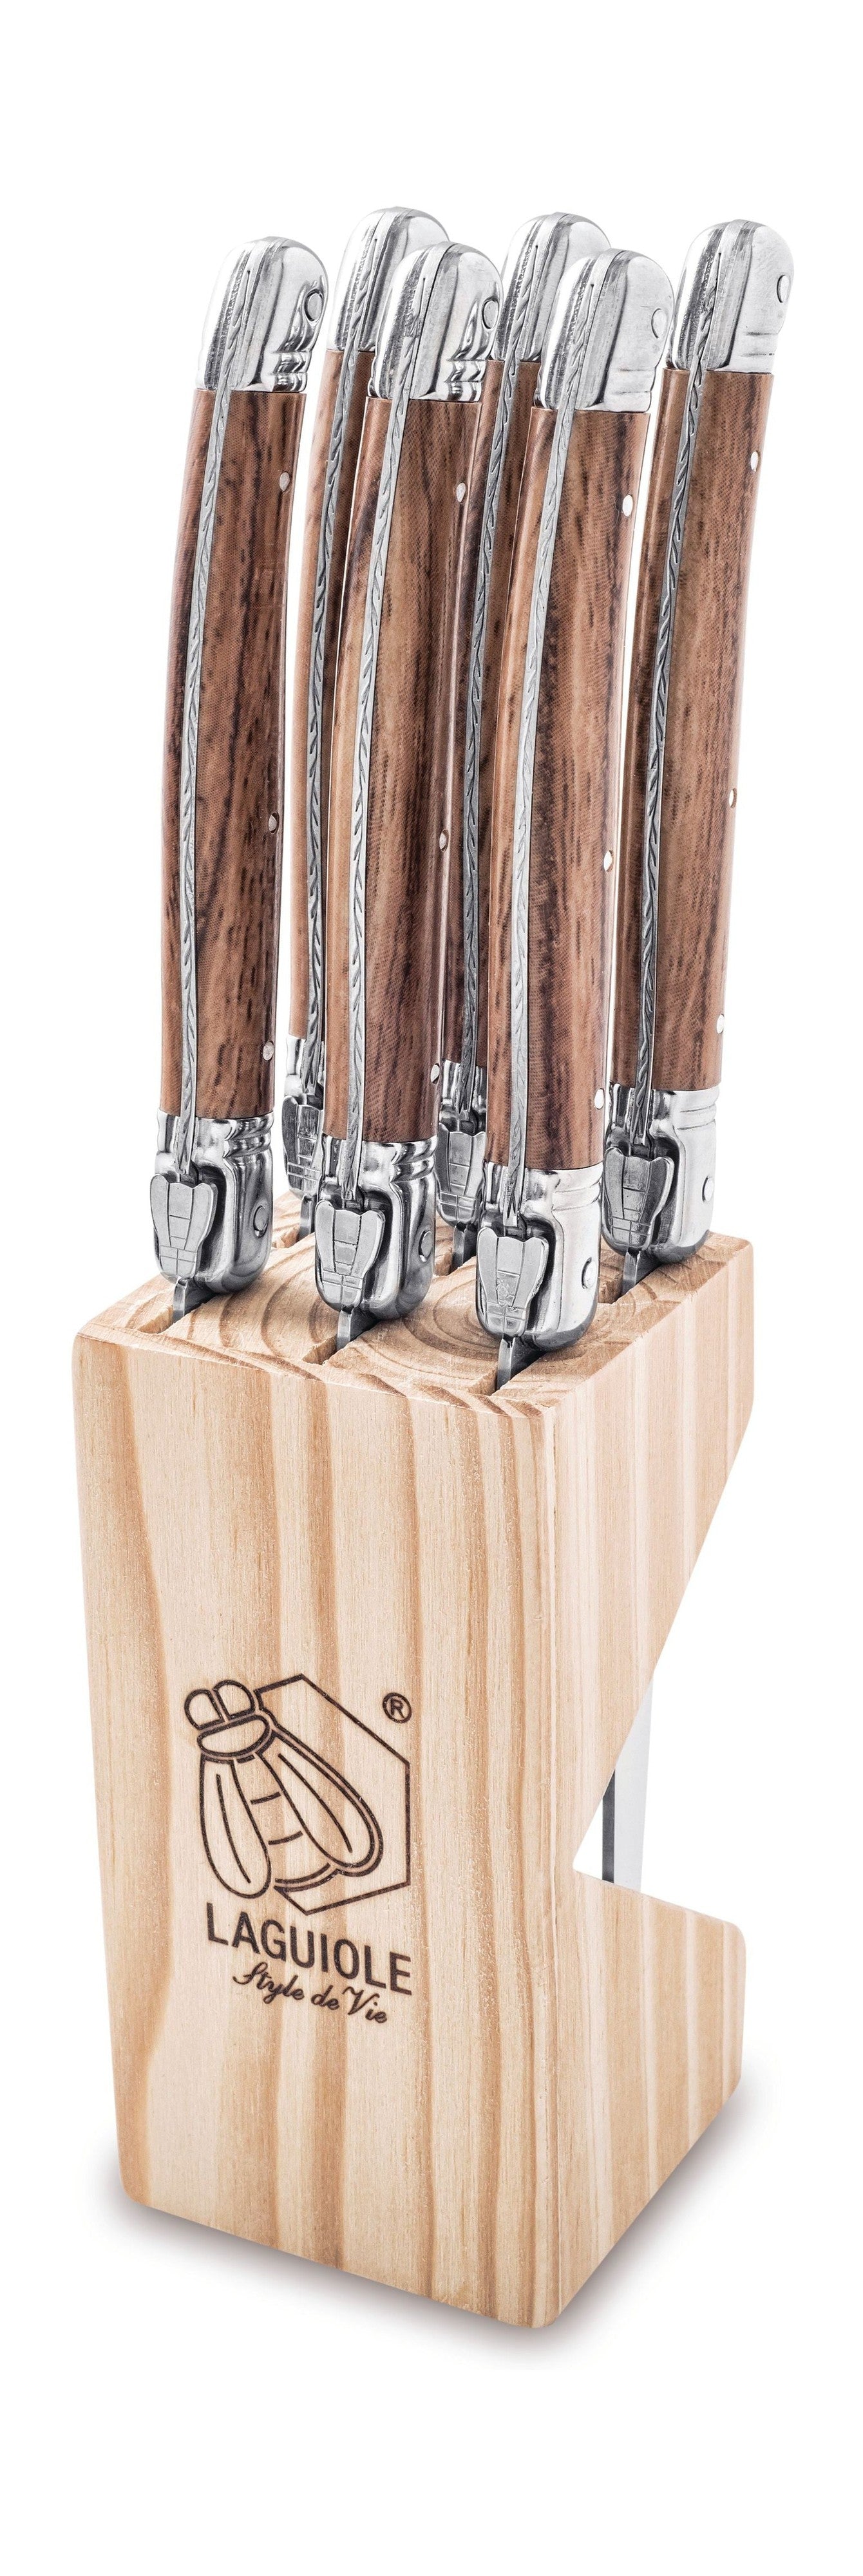 Style De Vie Authentique Laguiole Premium Line Steakmesser-Set, 6-teilig, helles Holz